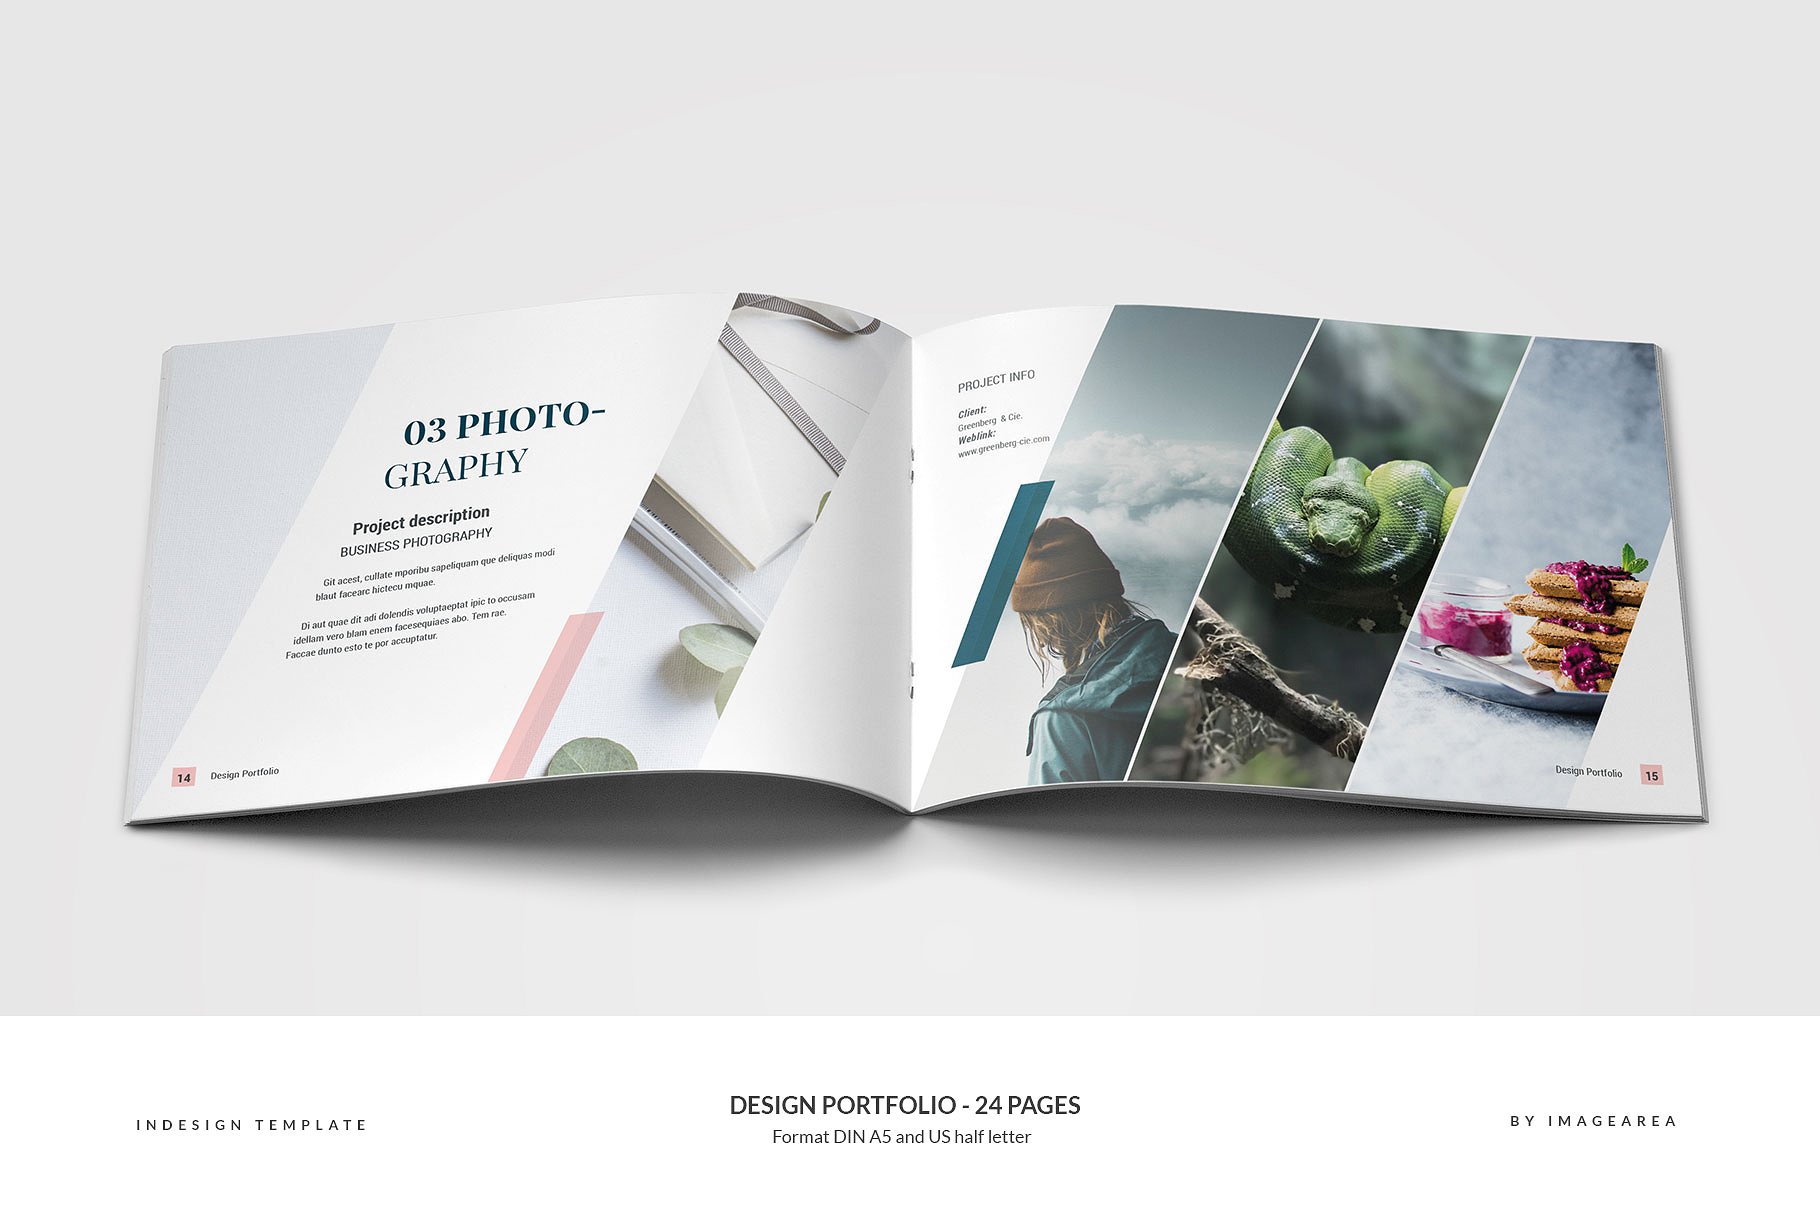 时尚简约企业画册模板 Design Portfolio – 24 Pages插图(7)